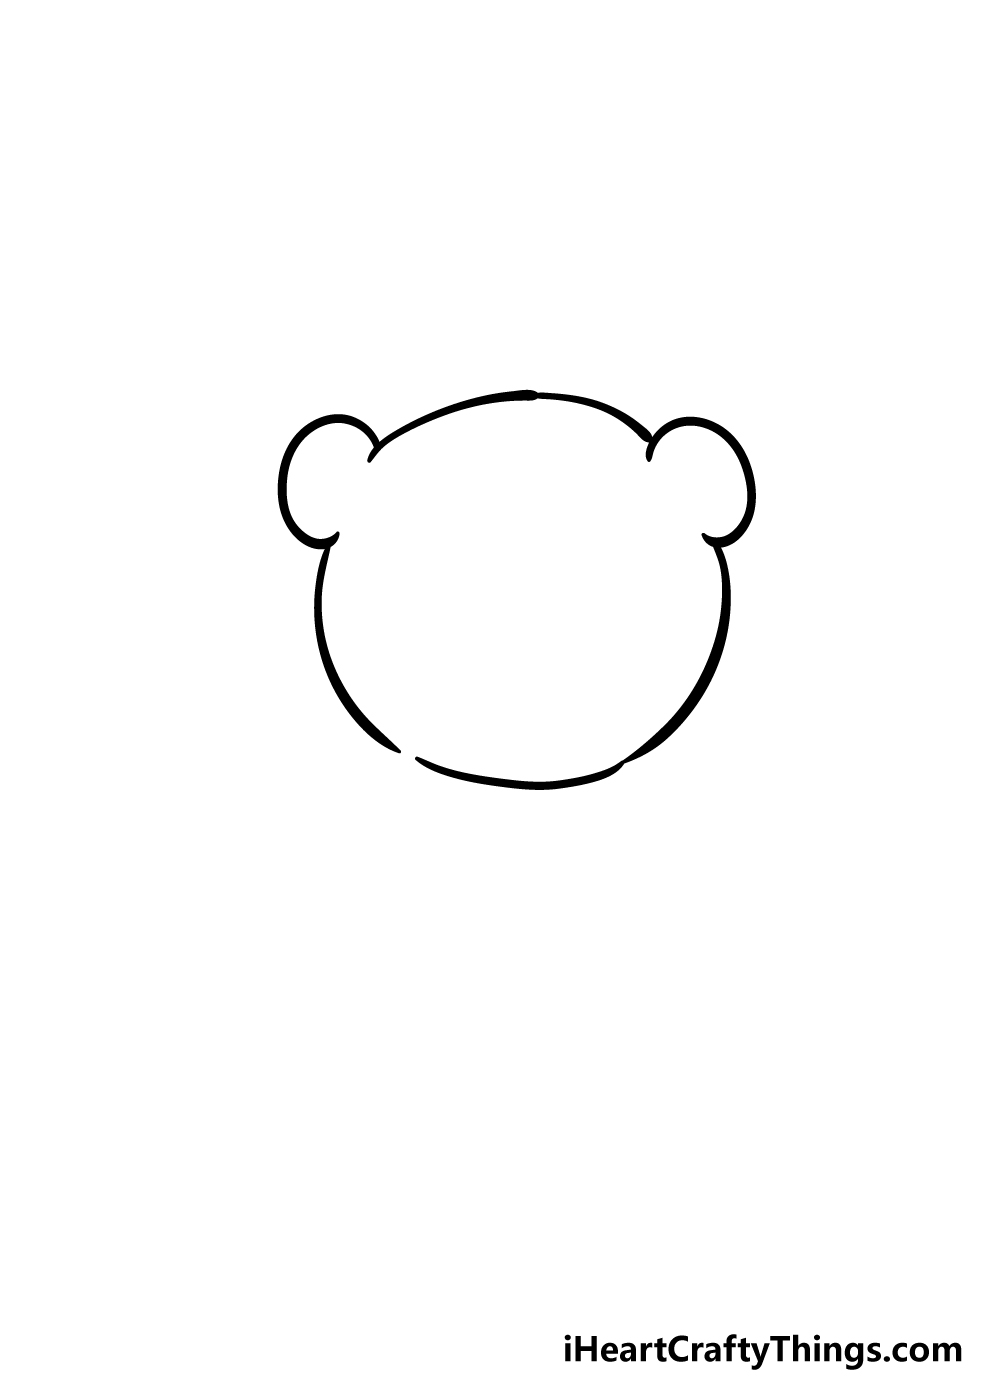 Panda1 - Hướng dẫn chi tiết cách vẽ con gấu trúc cute dễ thương với 7 bước đơn giản